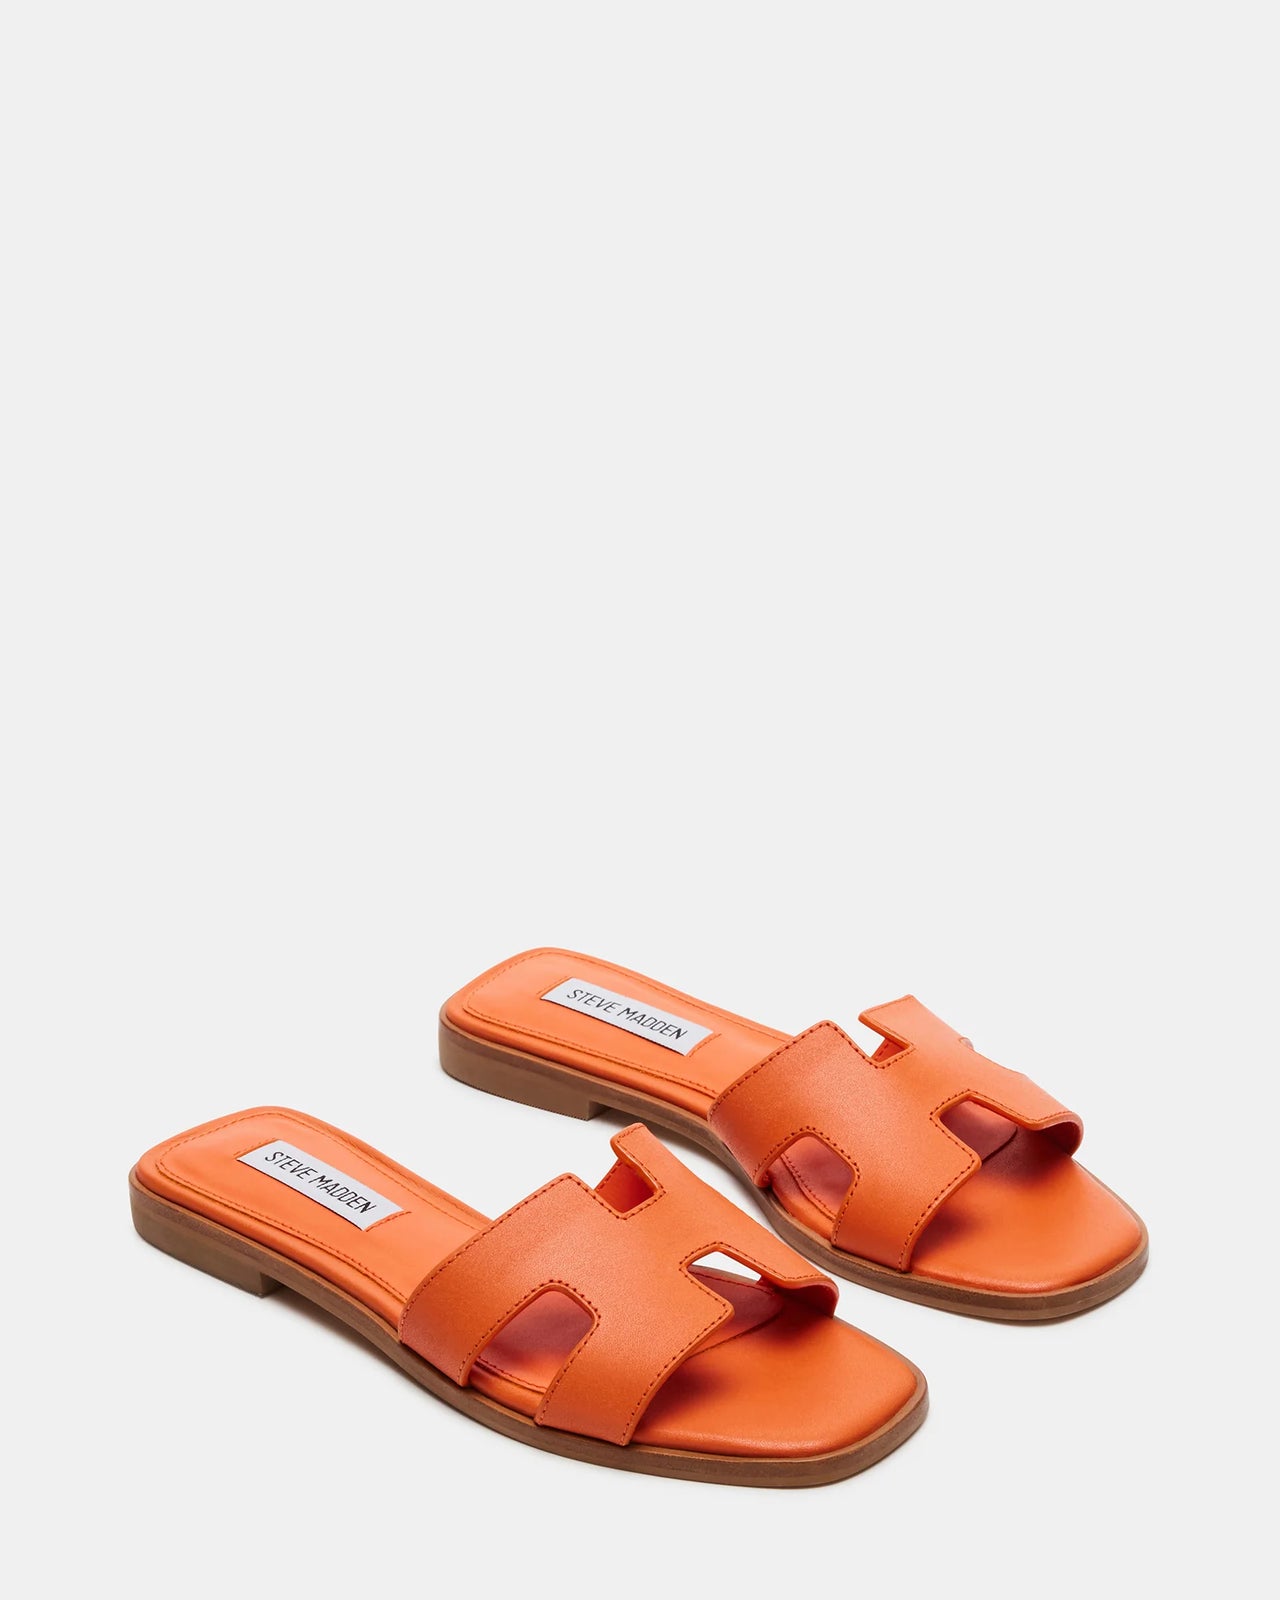 Hadyn Shoe Orange Leather, Flat Shoe by Steve Madden | LIT Boutique